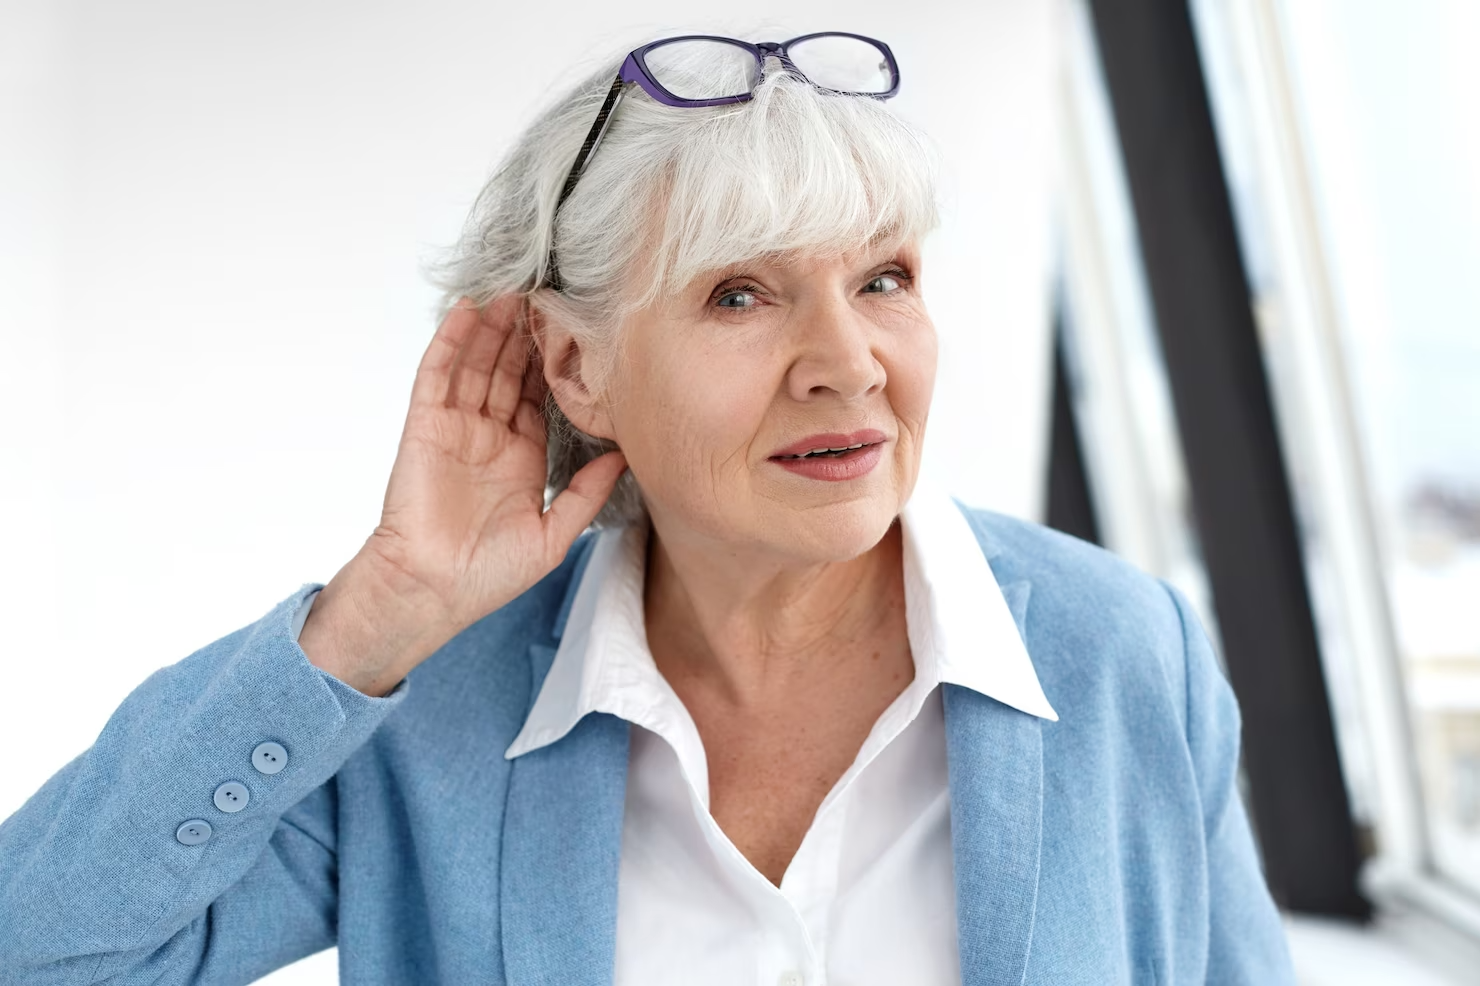 When hearing aids no longer help?